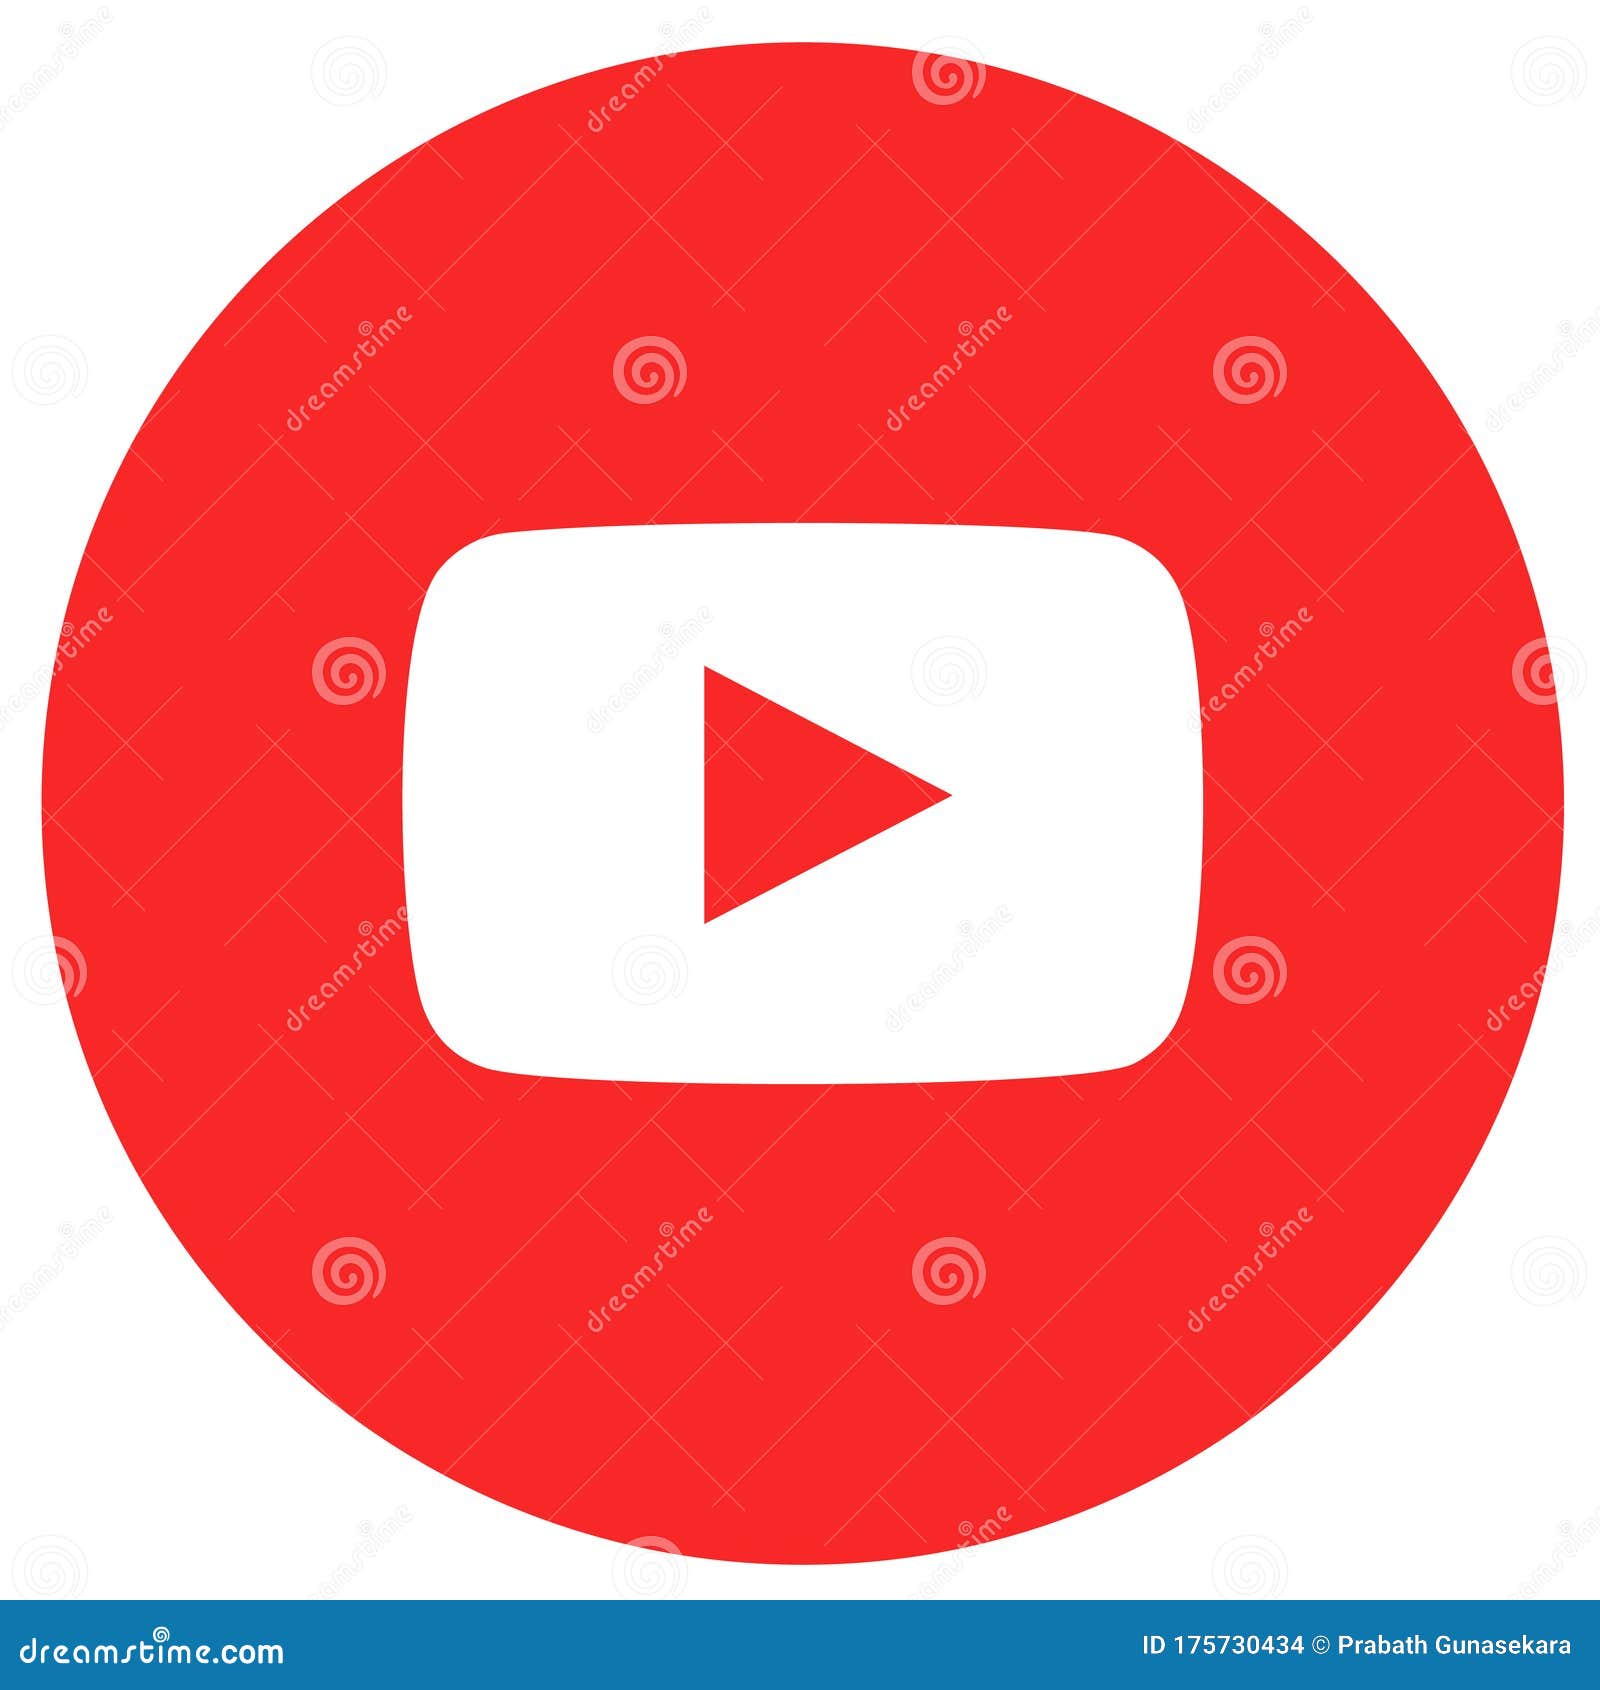 Hãy cùng khám phá về con gấu trúc đáng yêu của Youtube logo icon trong hình ảnh này và không quên đăng ký kênh của chúng tôi để được cập nhật những video thú vị nhất.